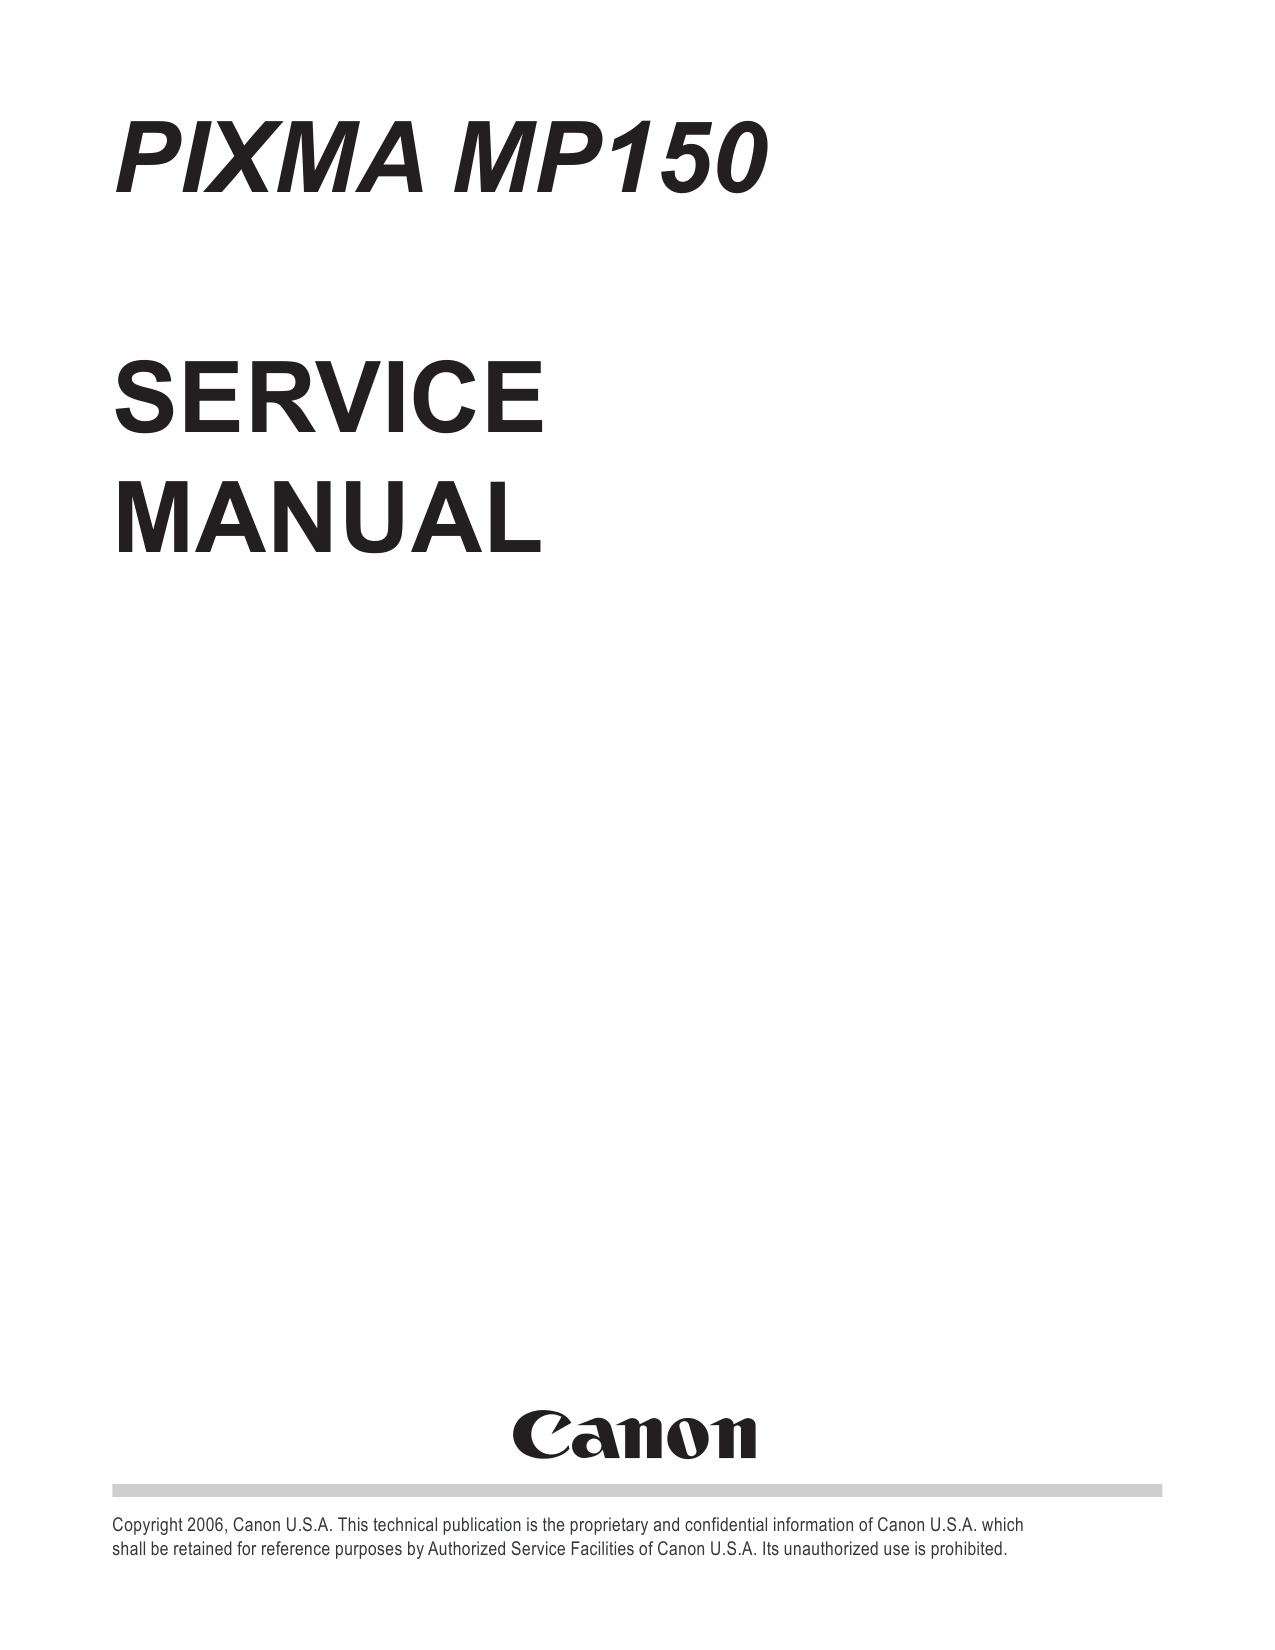 Canon PIXMA MP150 Service Manual-1